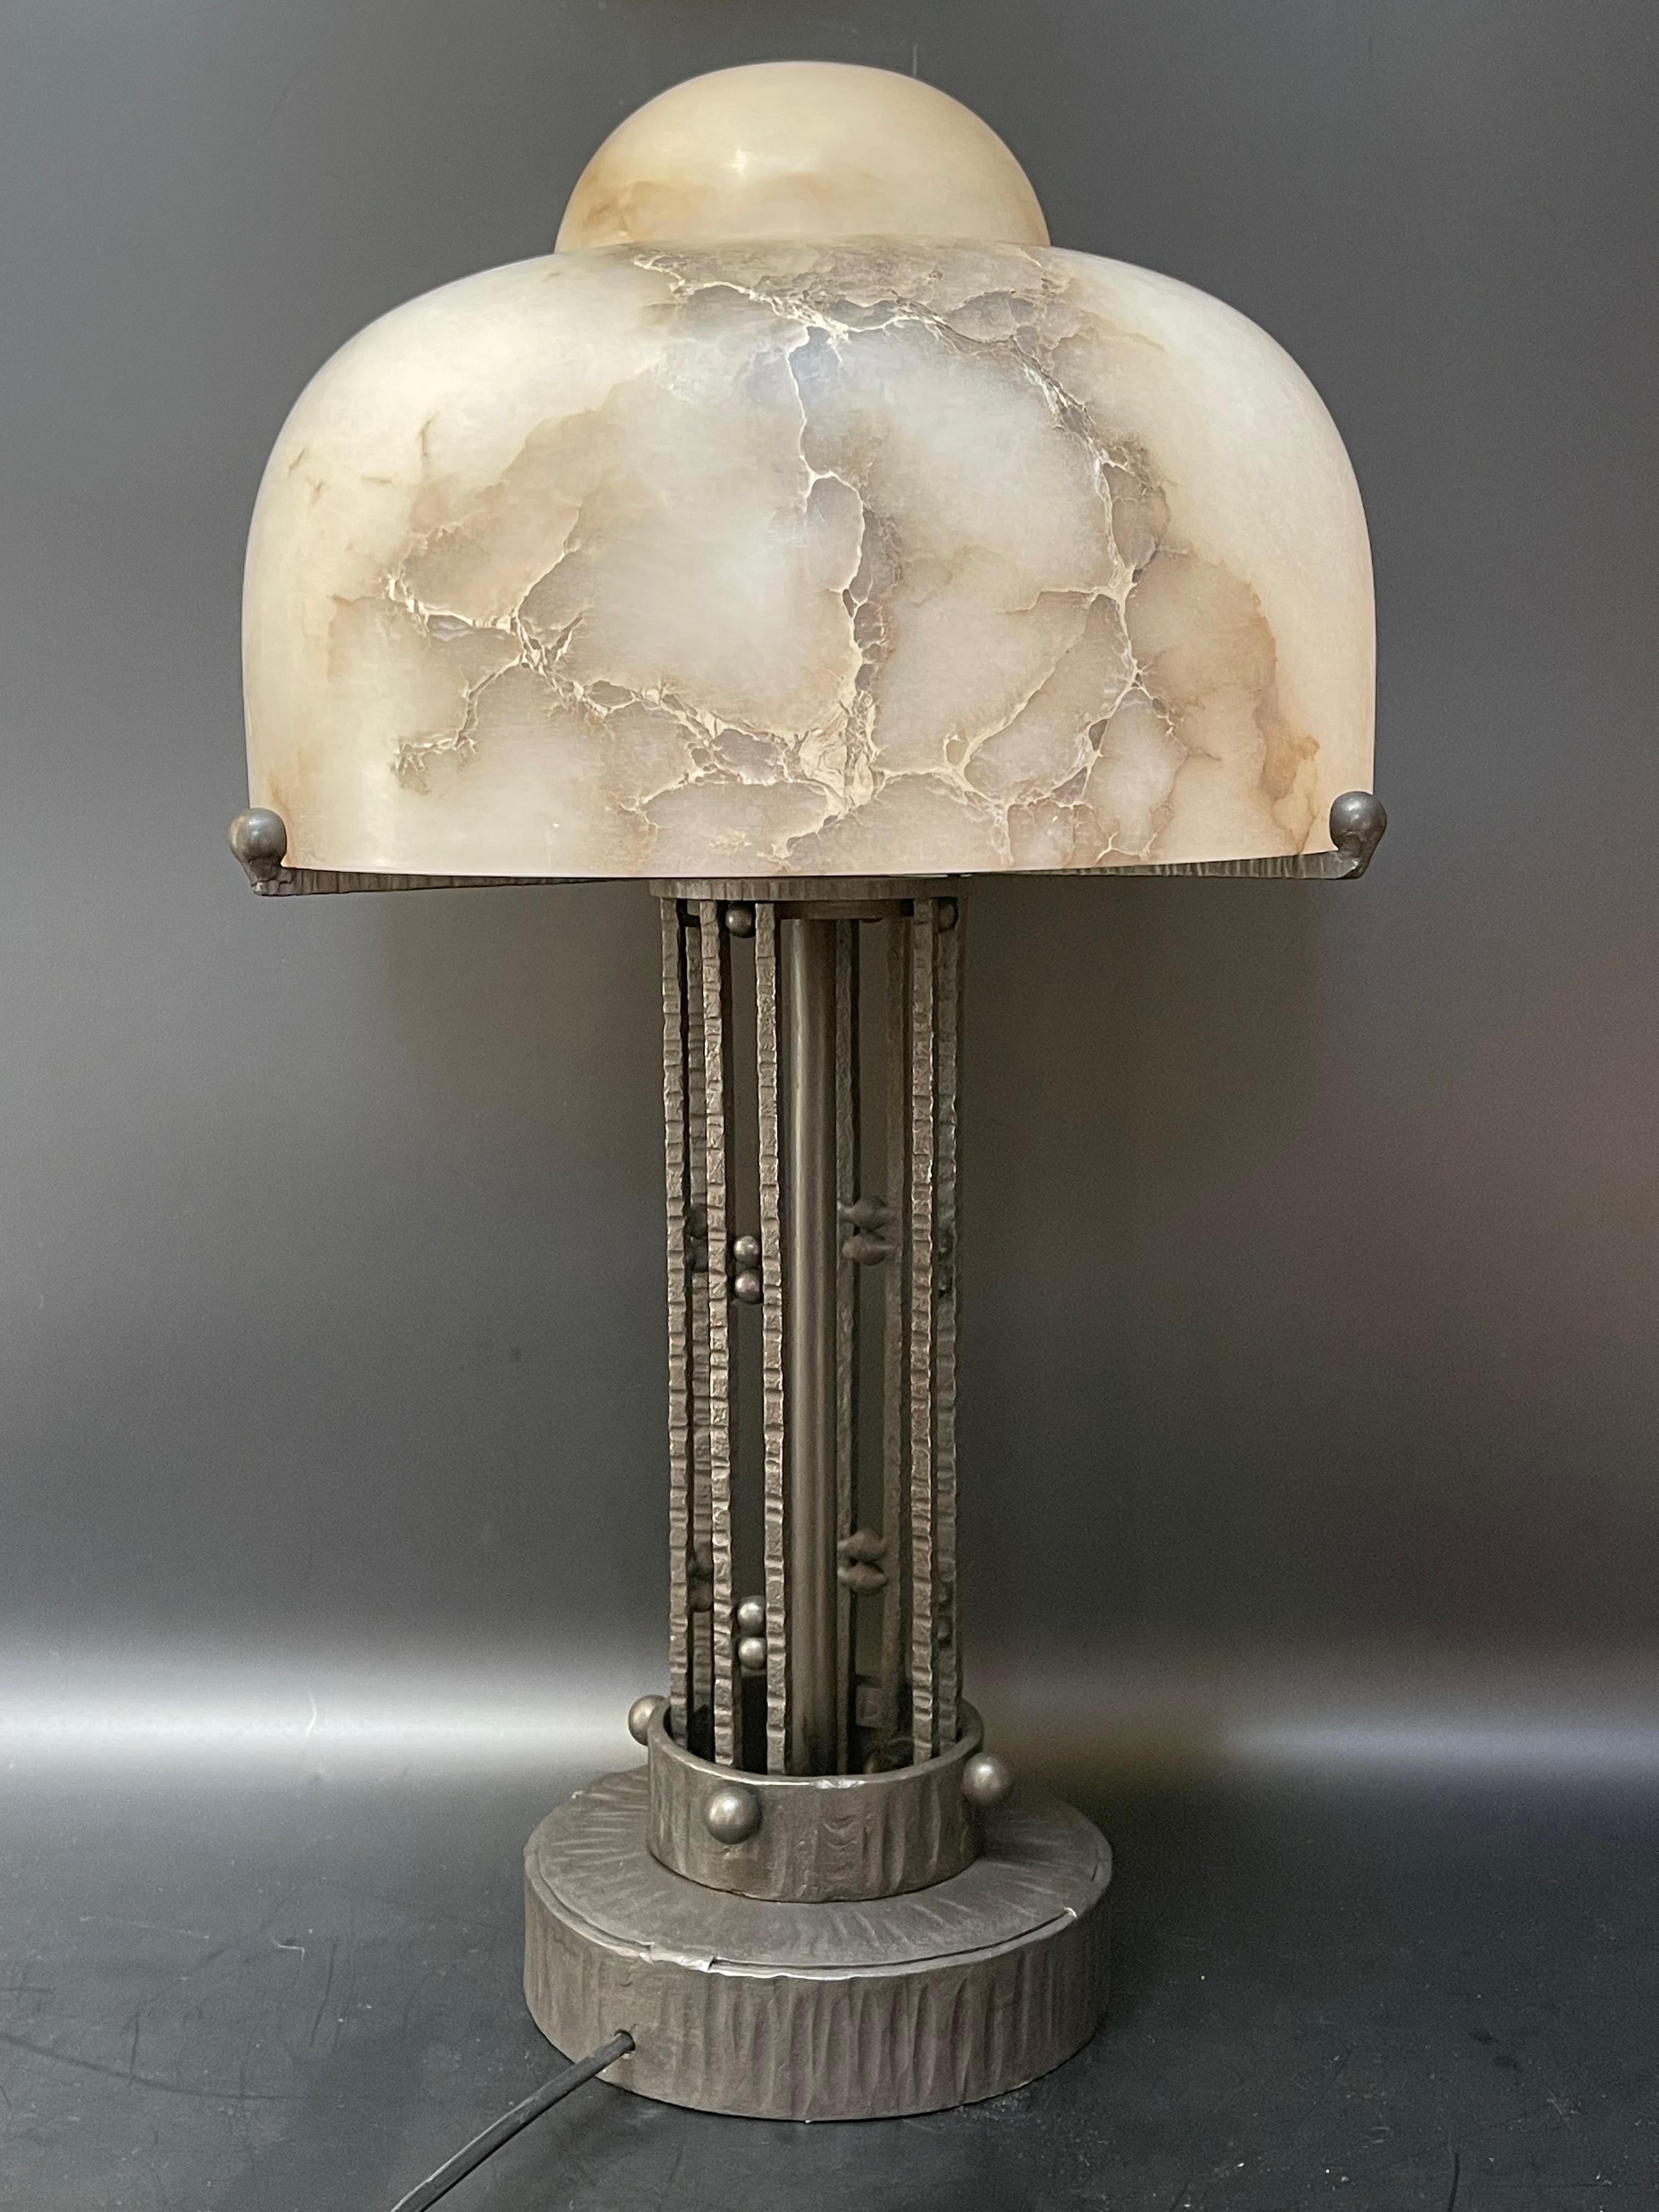 Grande lampe Art Déco vers 1930.
Coquille en albâtre et pied en fer forgé.
En très bon état et électrifié.

Diamètre : 30 cm (obus) 
Diamètre : 17 cm (base)
Hauteur : 53 cm.